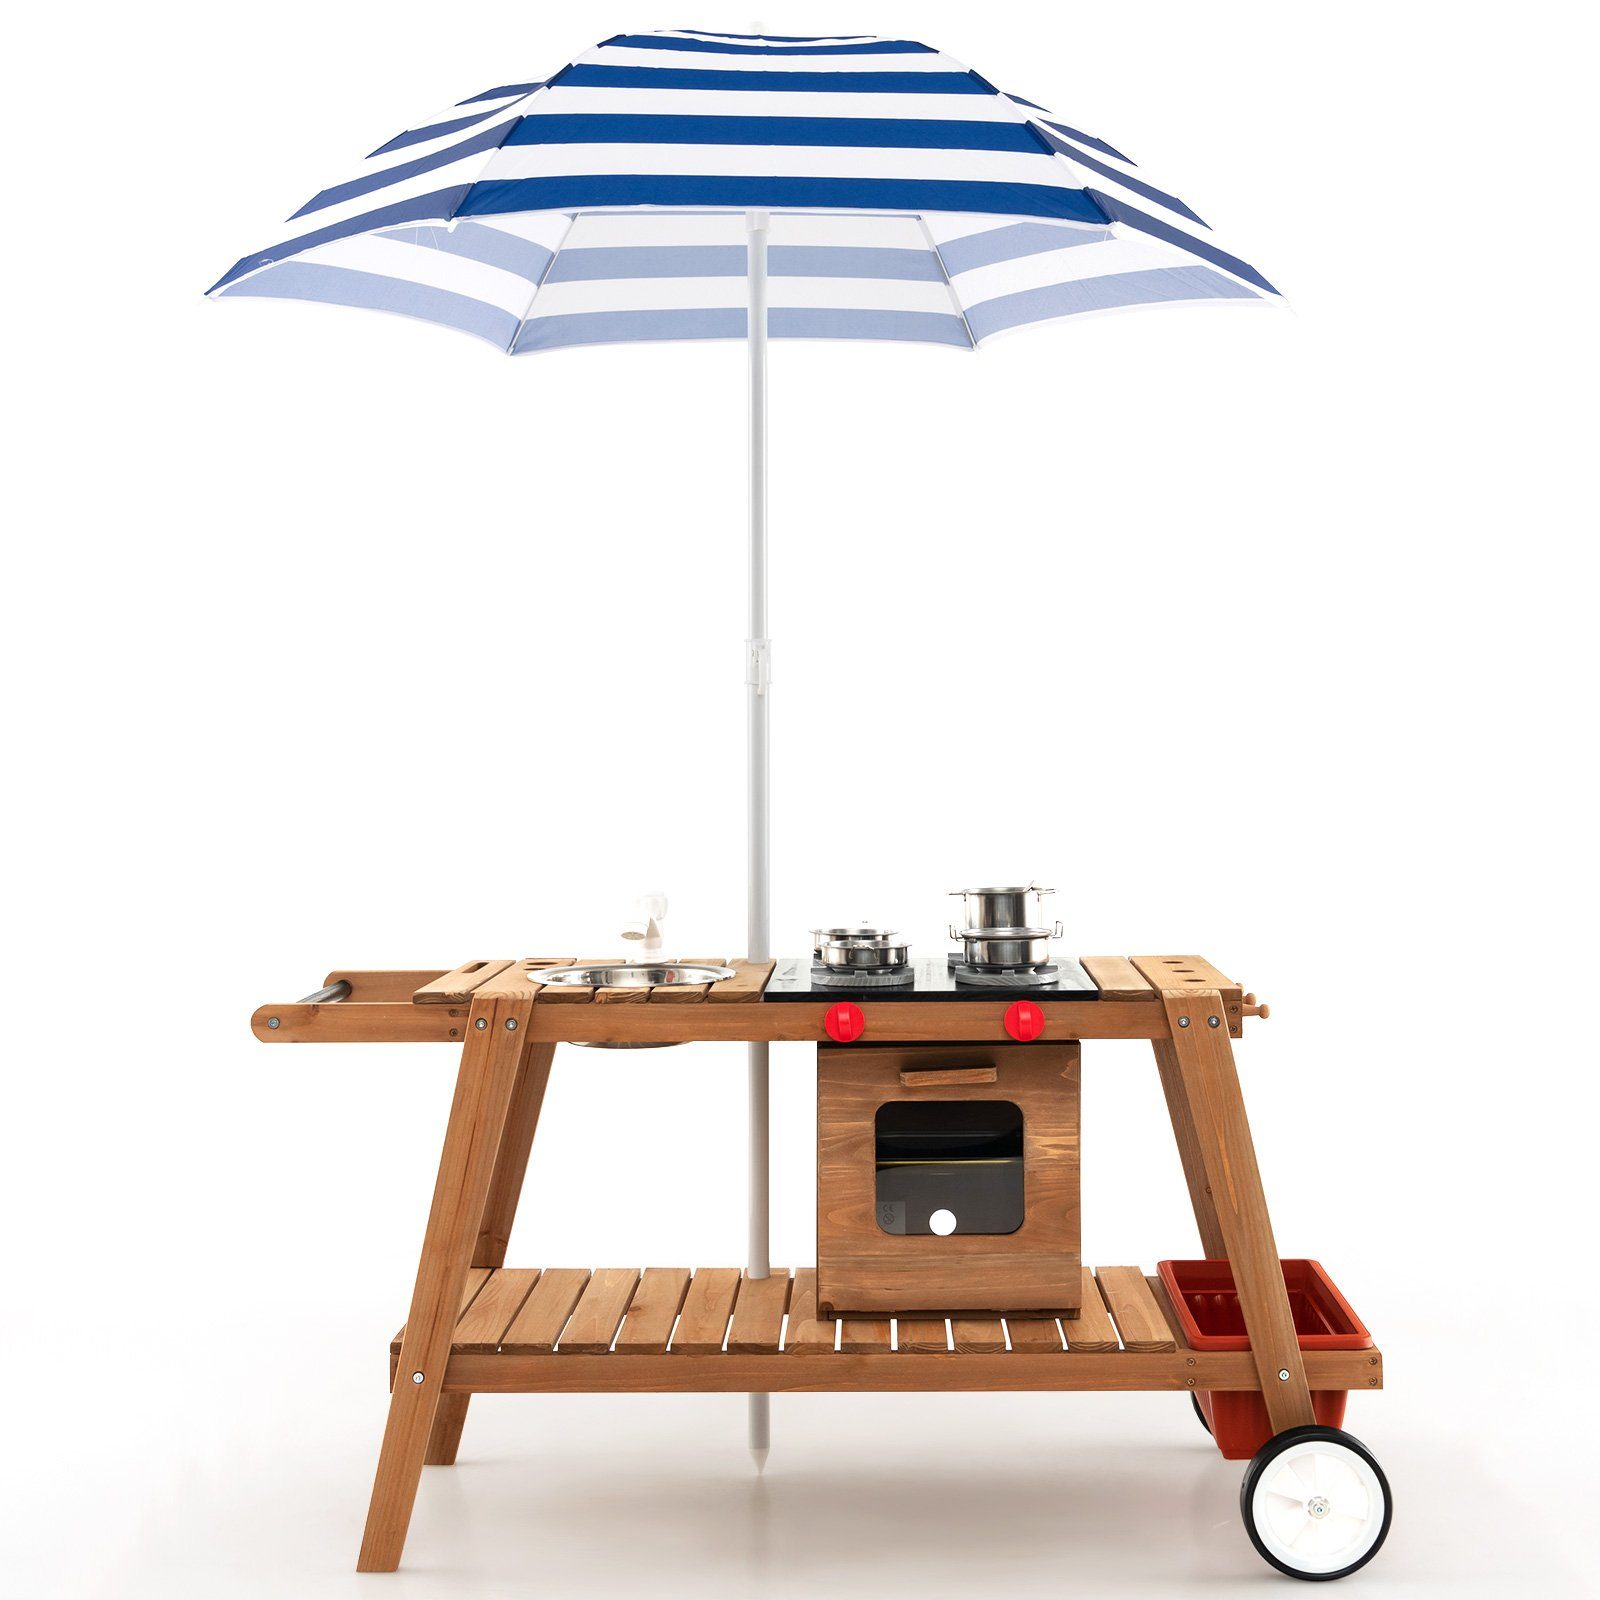 COSTWAY Outdoor-Spielküche Matschküche Holz, mit Sonnenschirm, aus Holz